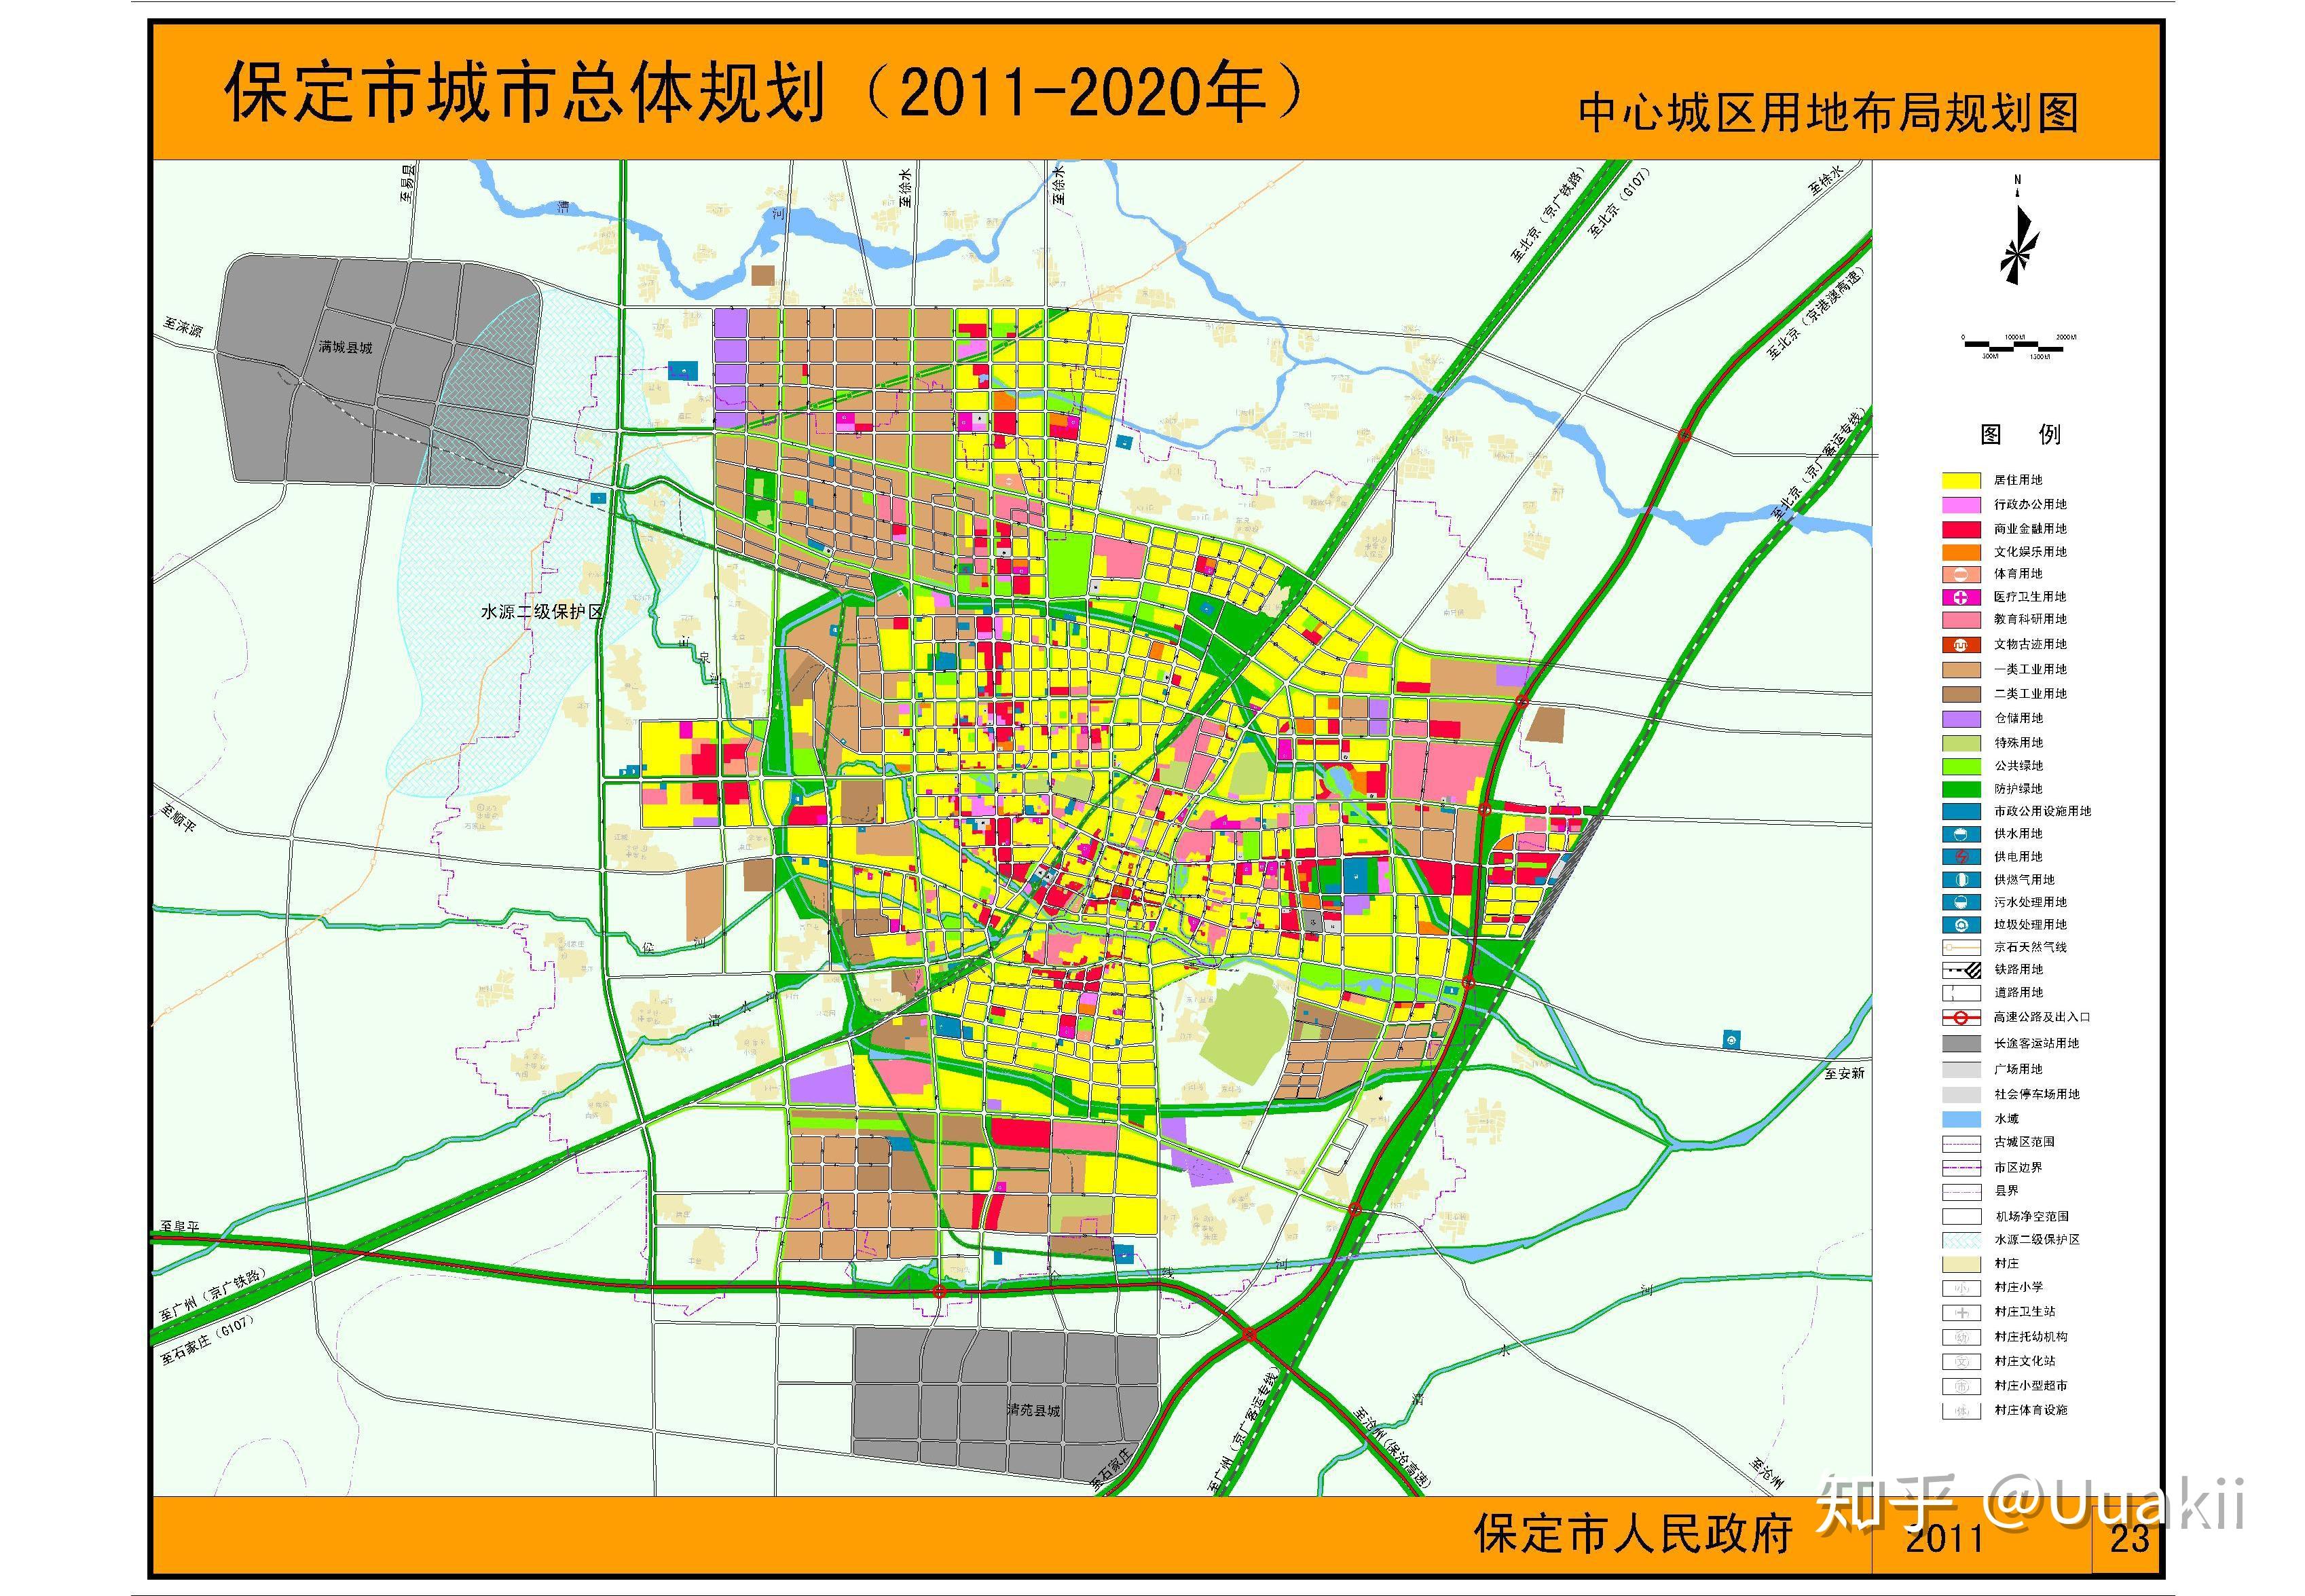 河北雄安新区起步区控制性规划-中国城市规划设计研究院(中规院) - 我的建筑 myArch.cn